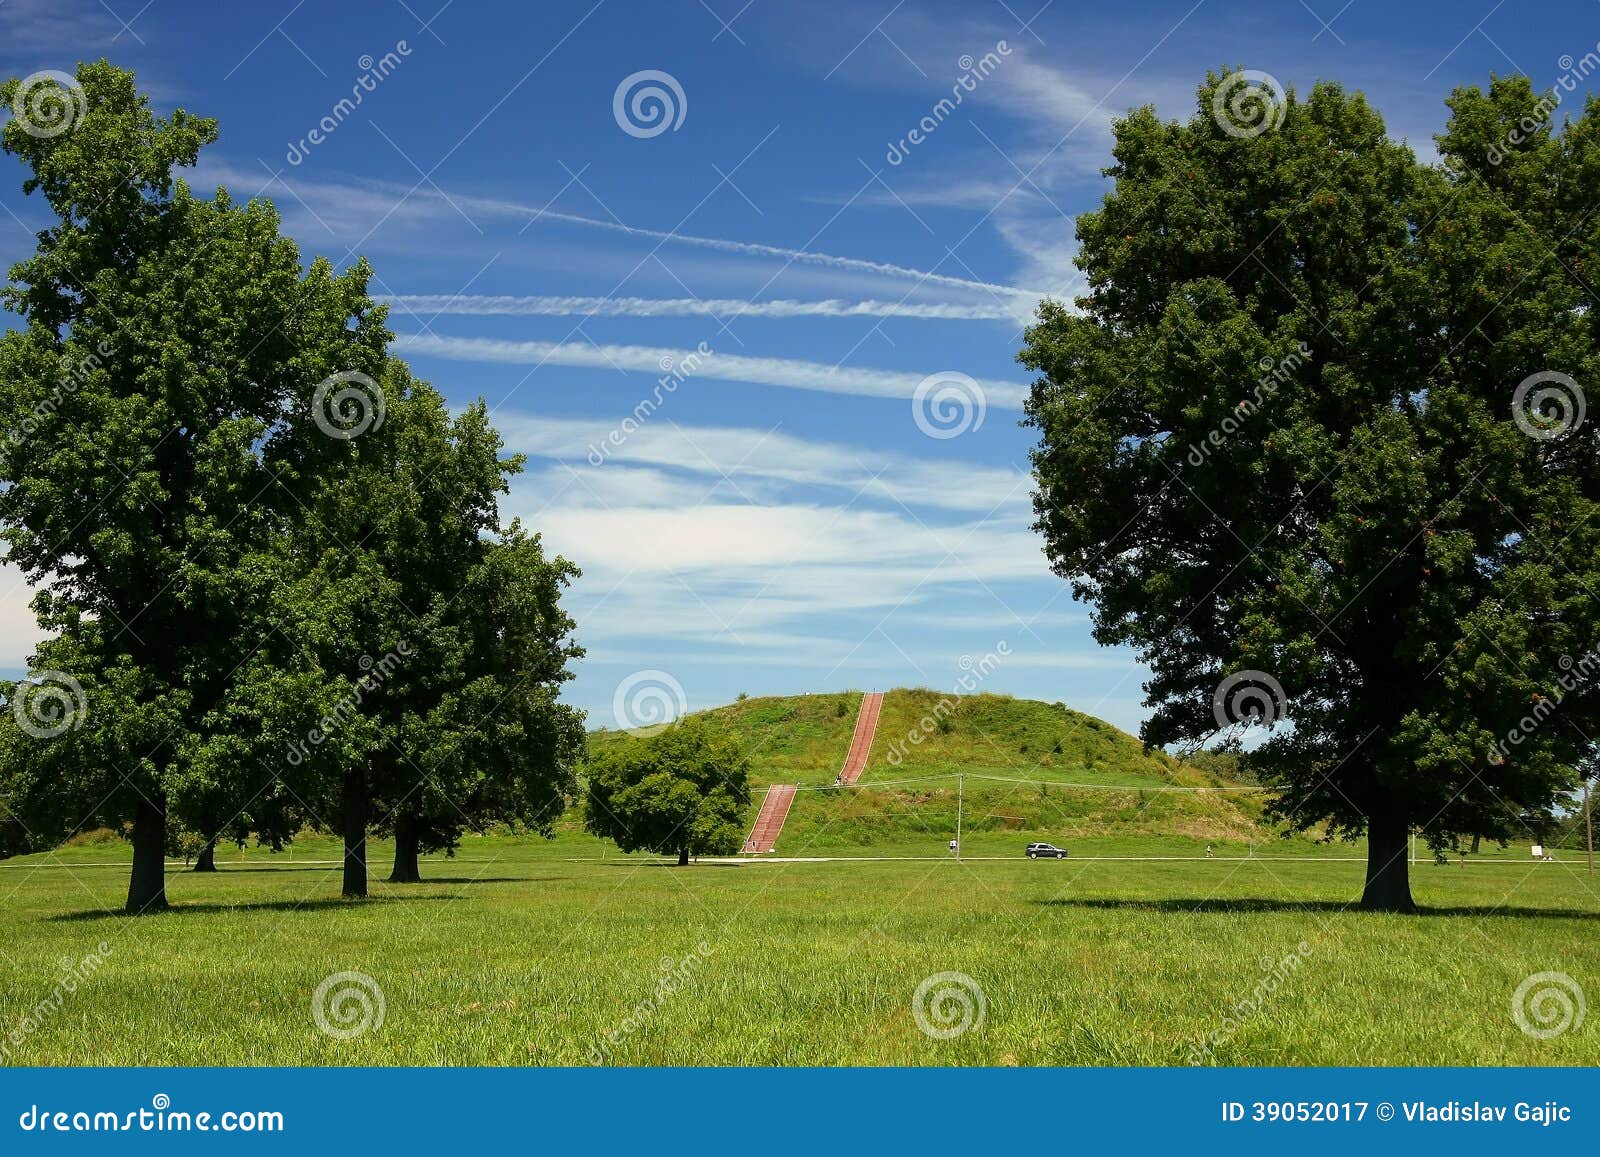 cahokia mound